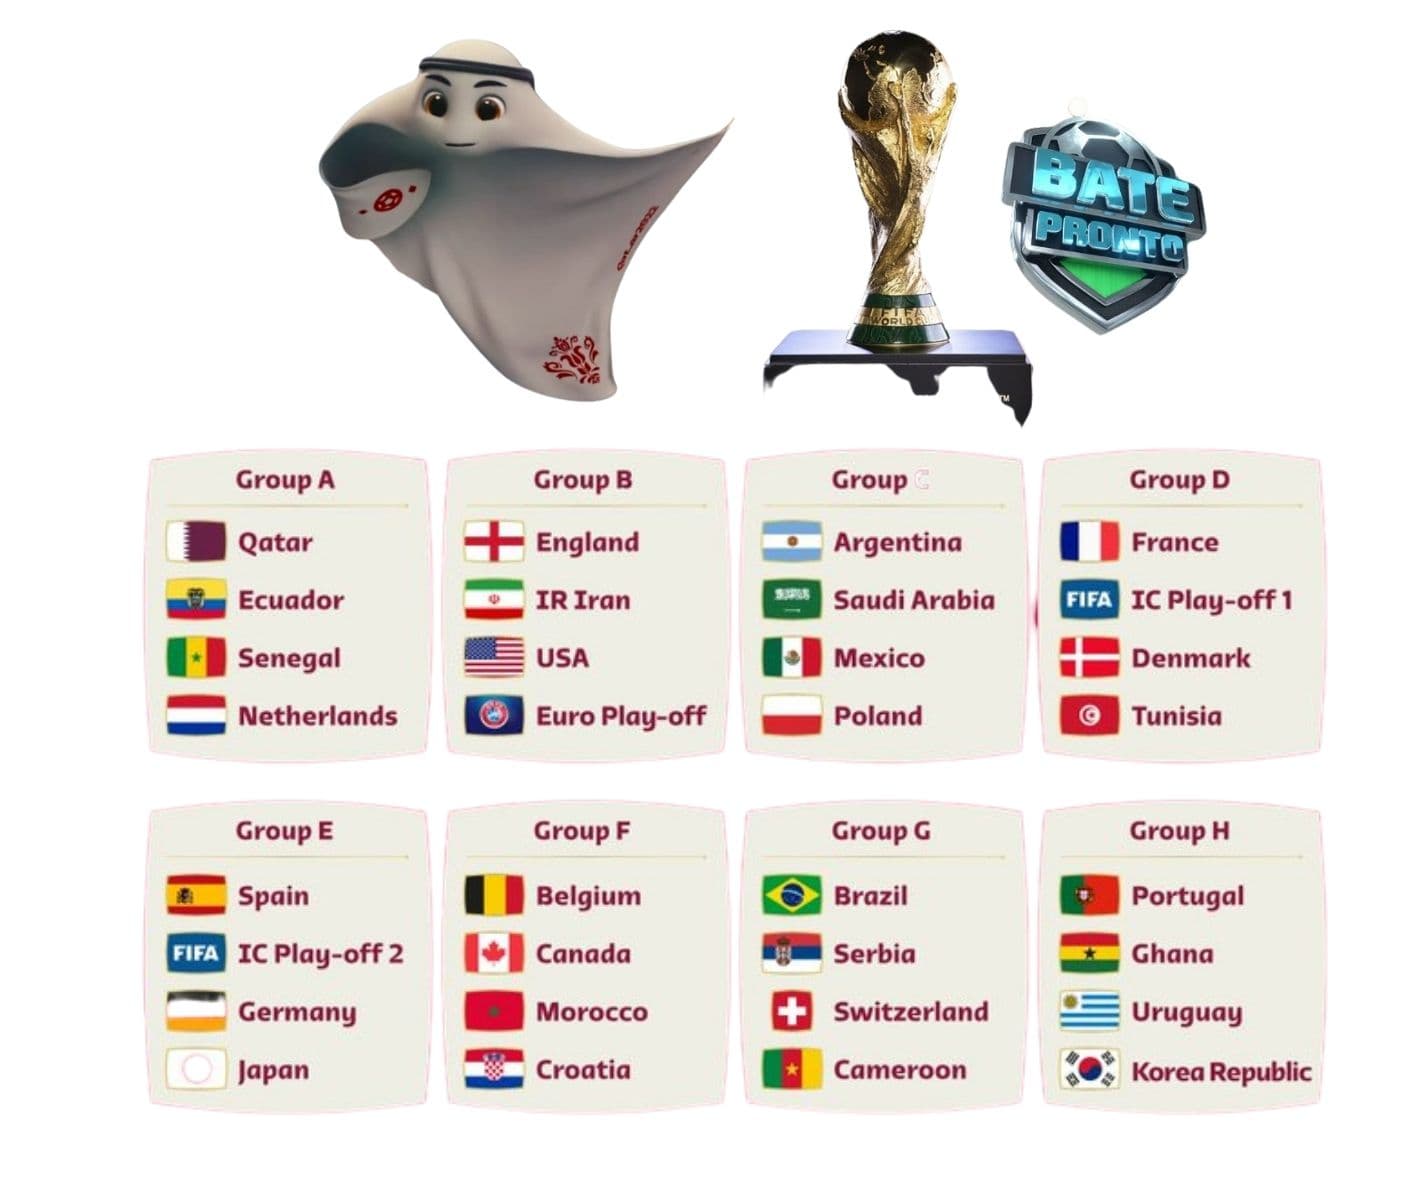 Sorteio dos grupos da Copa do Mundo acontece nesta 6ª às 13h; Brasil e  Portugal são cabeças de chave